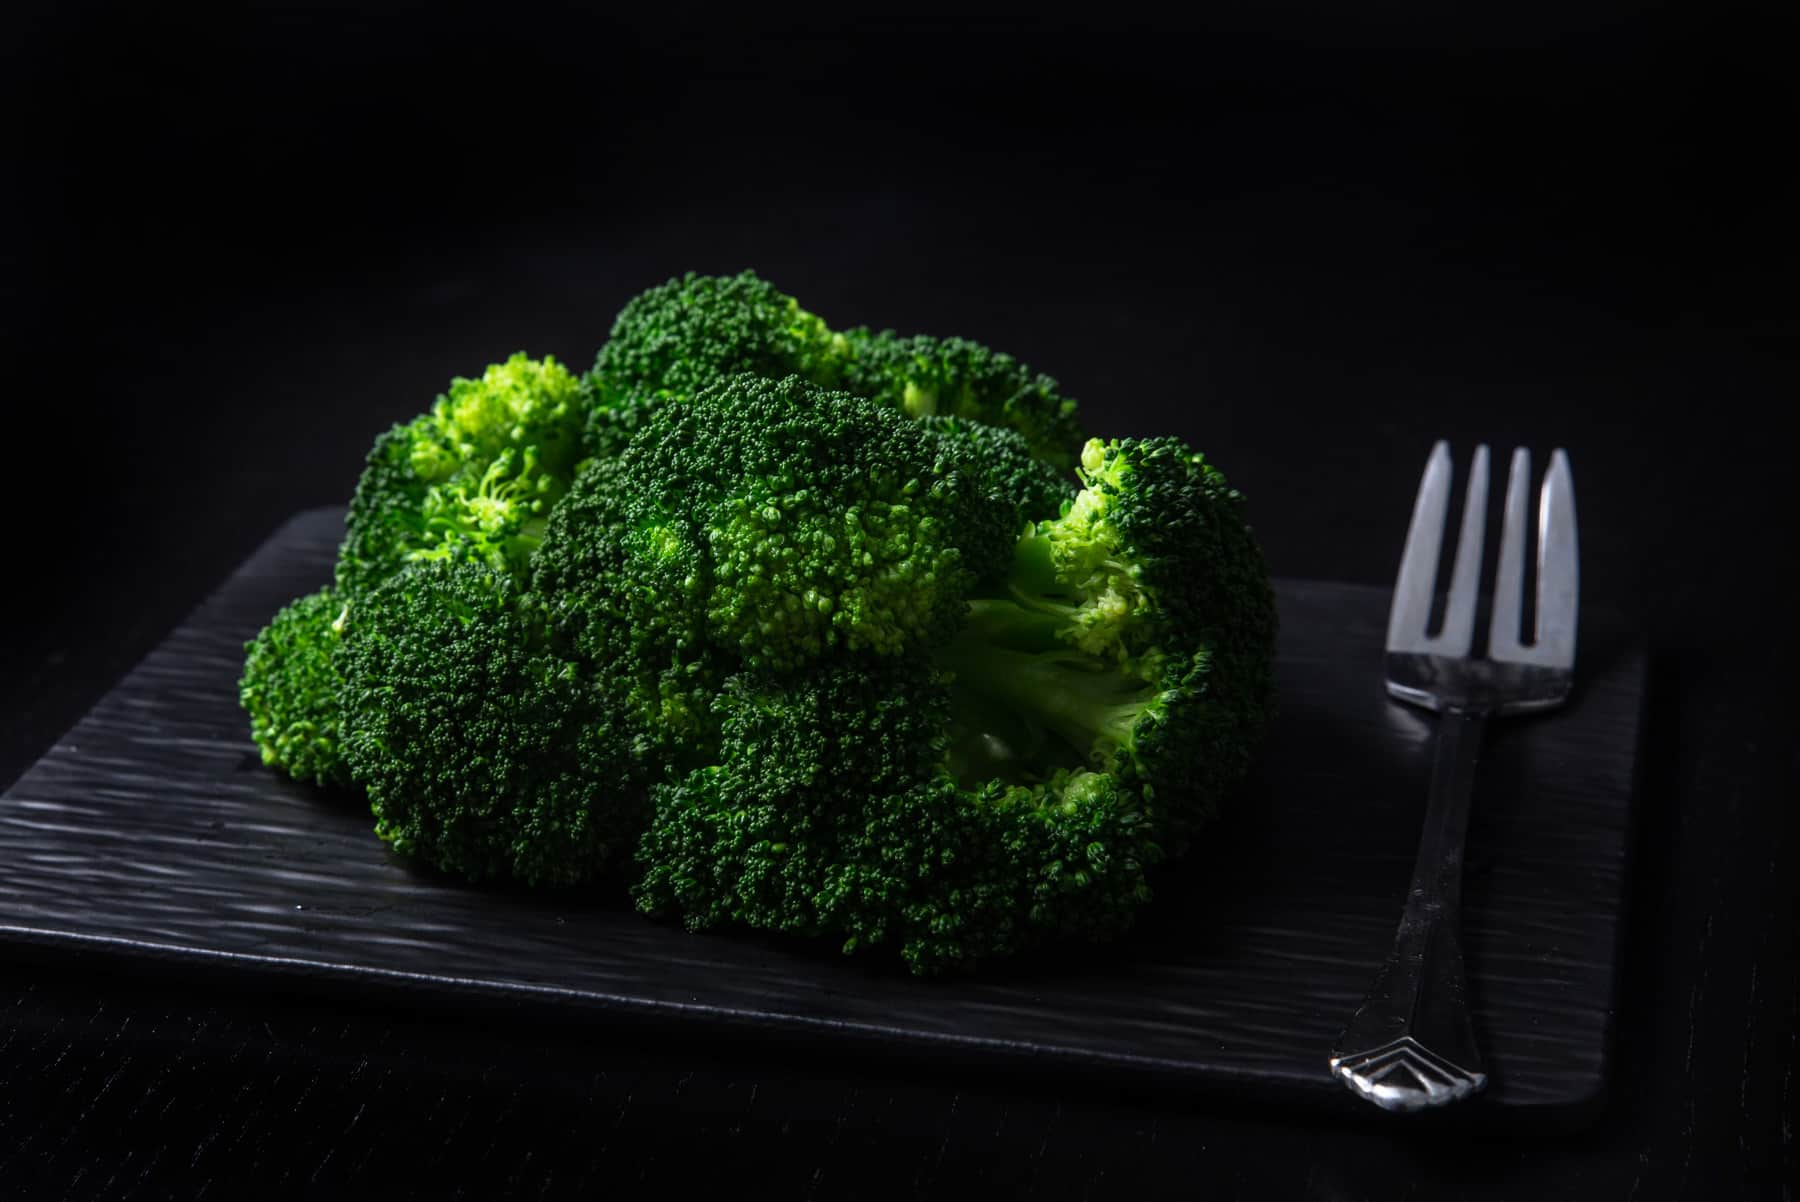 Broccoli smoothie recipes